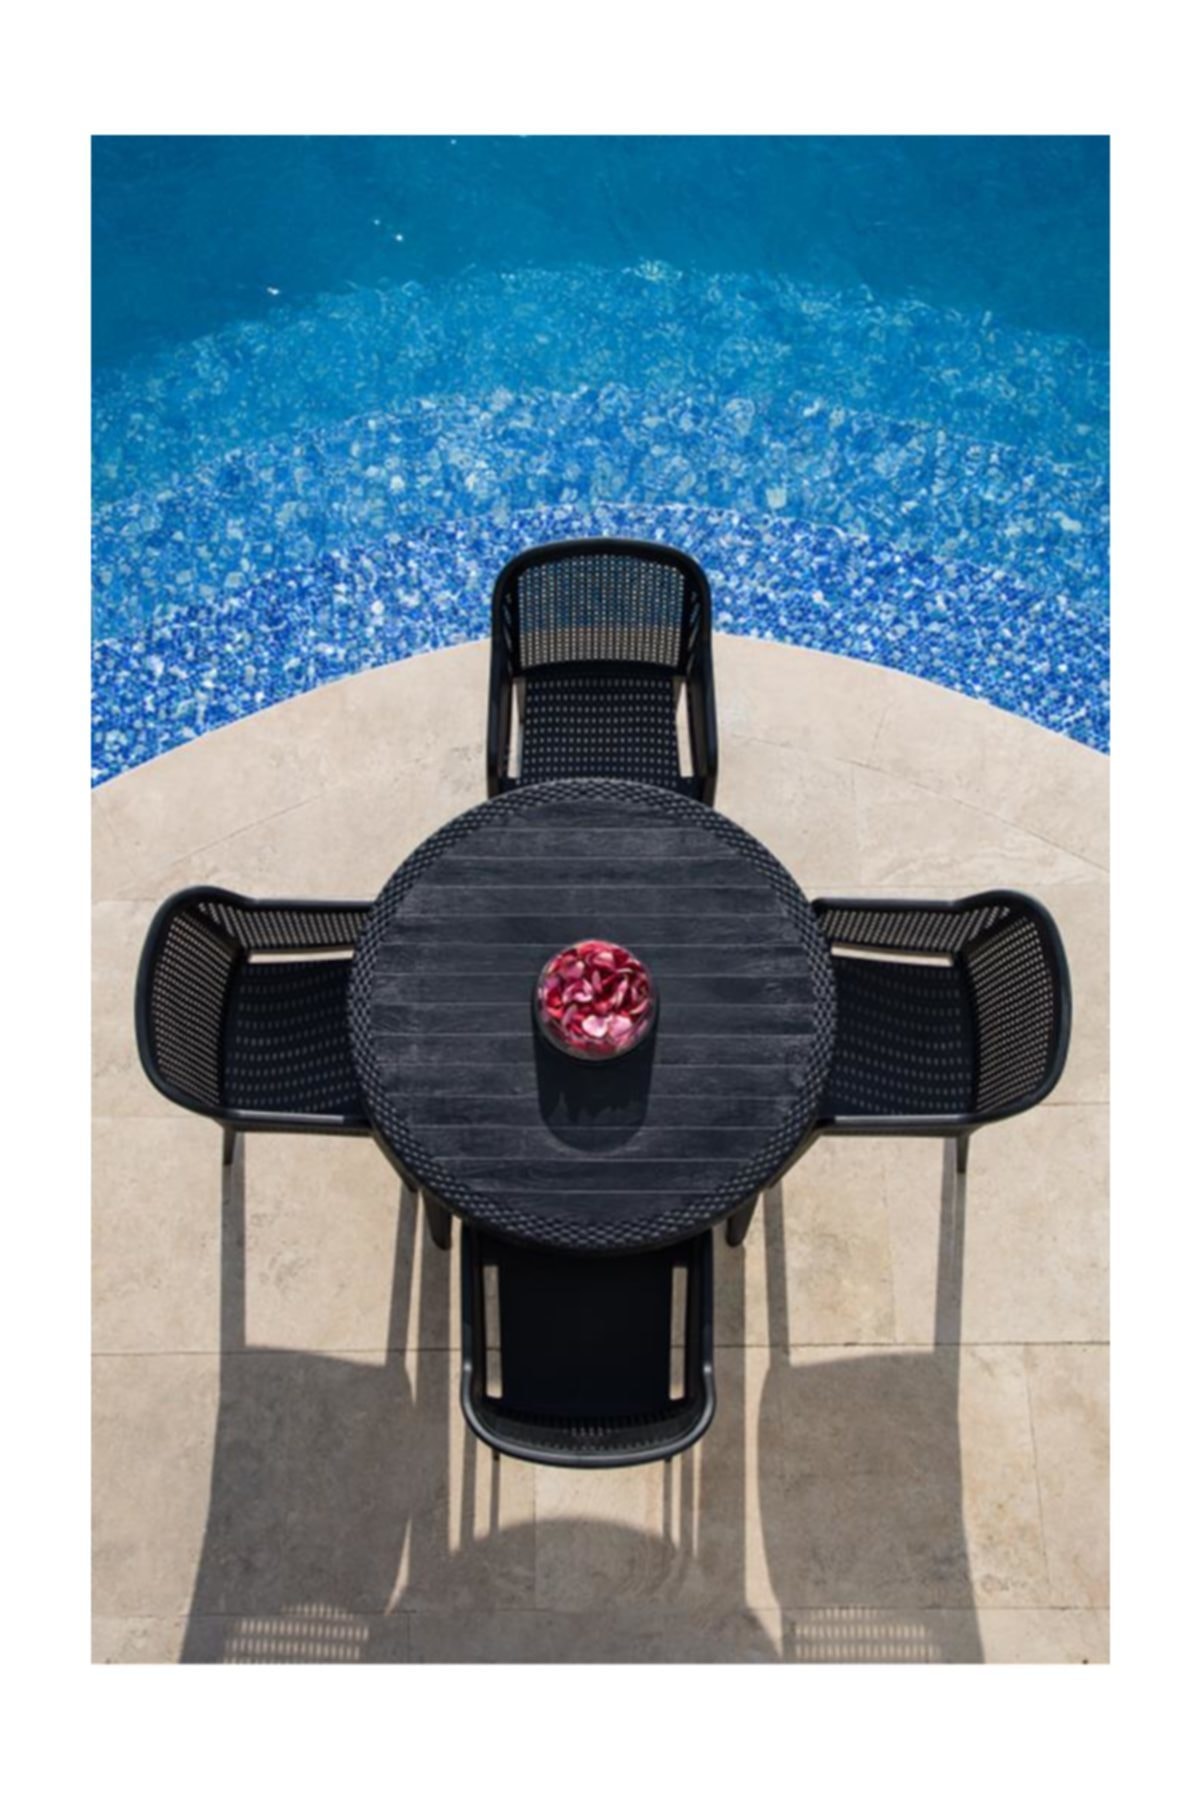 Tilia Summer 4 Kişilik Camsız Masa Sandalye Takımı Bahçe Balkon Seti